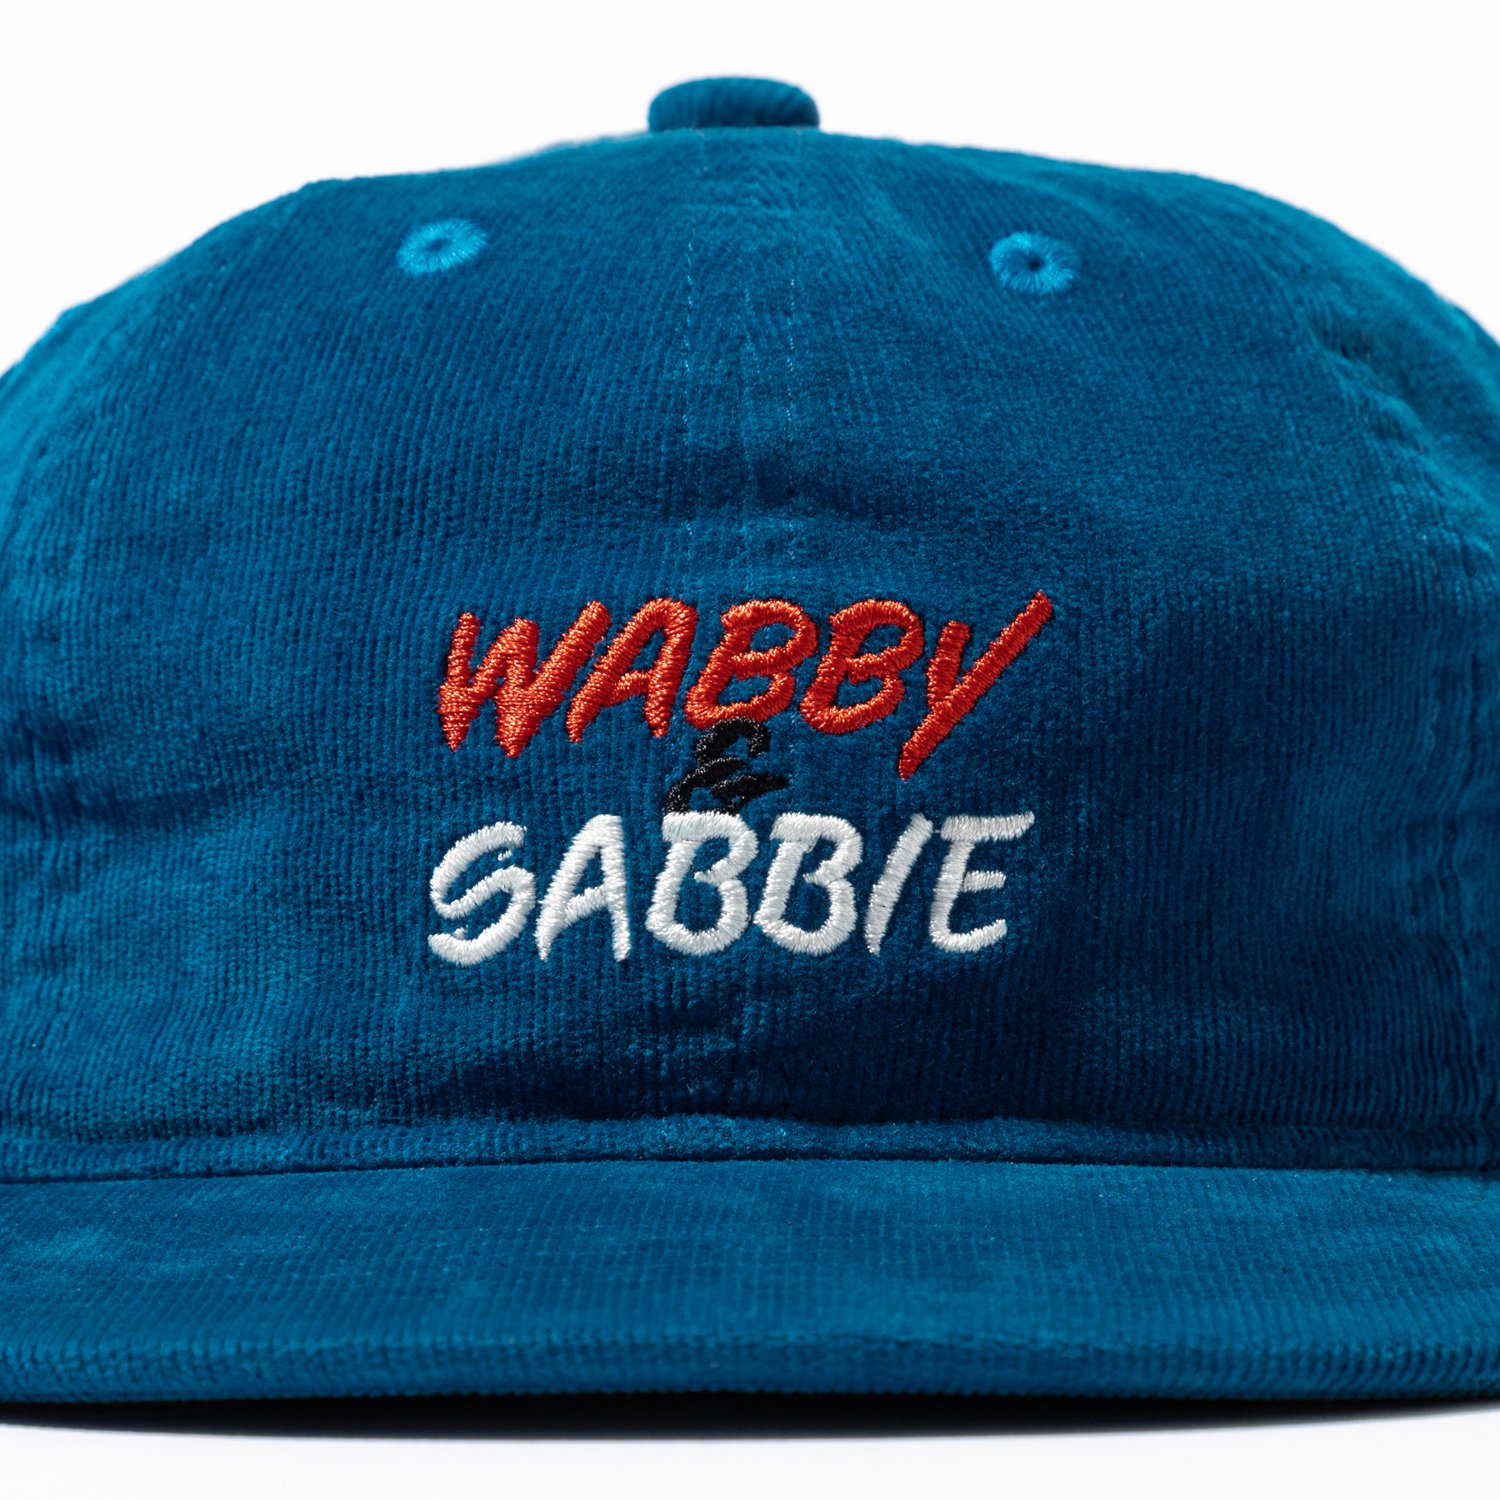 WABBY & SABBIE '23 CAP designed by Jerry UKAI - TACOMA FUJI 